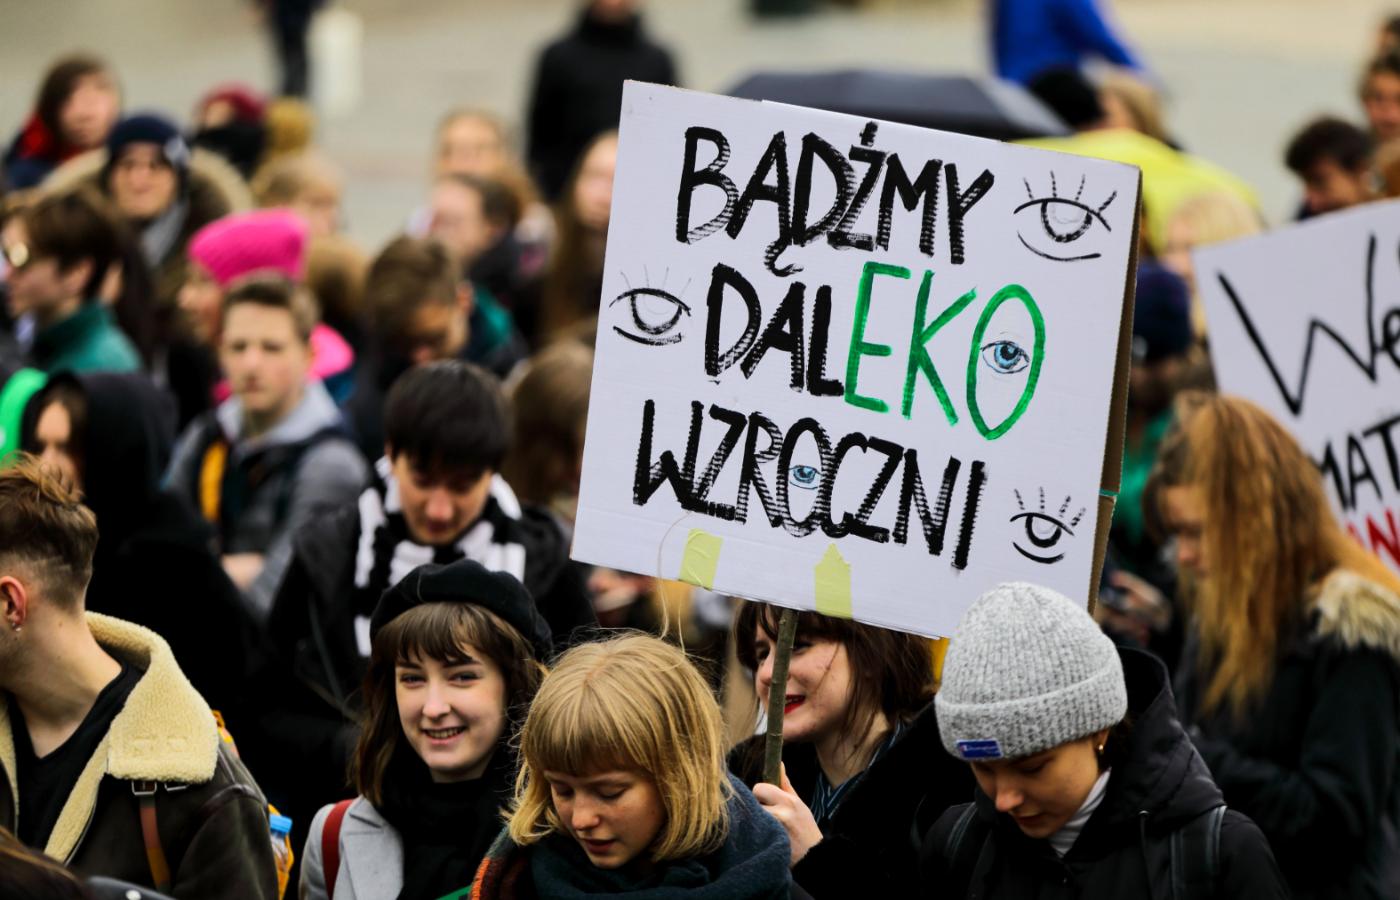 Młodzieżowy Strajk Klimatyczny, Kraków, marzec 2019 r.